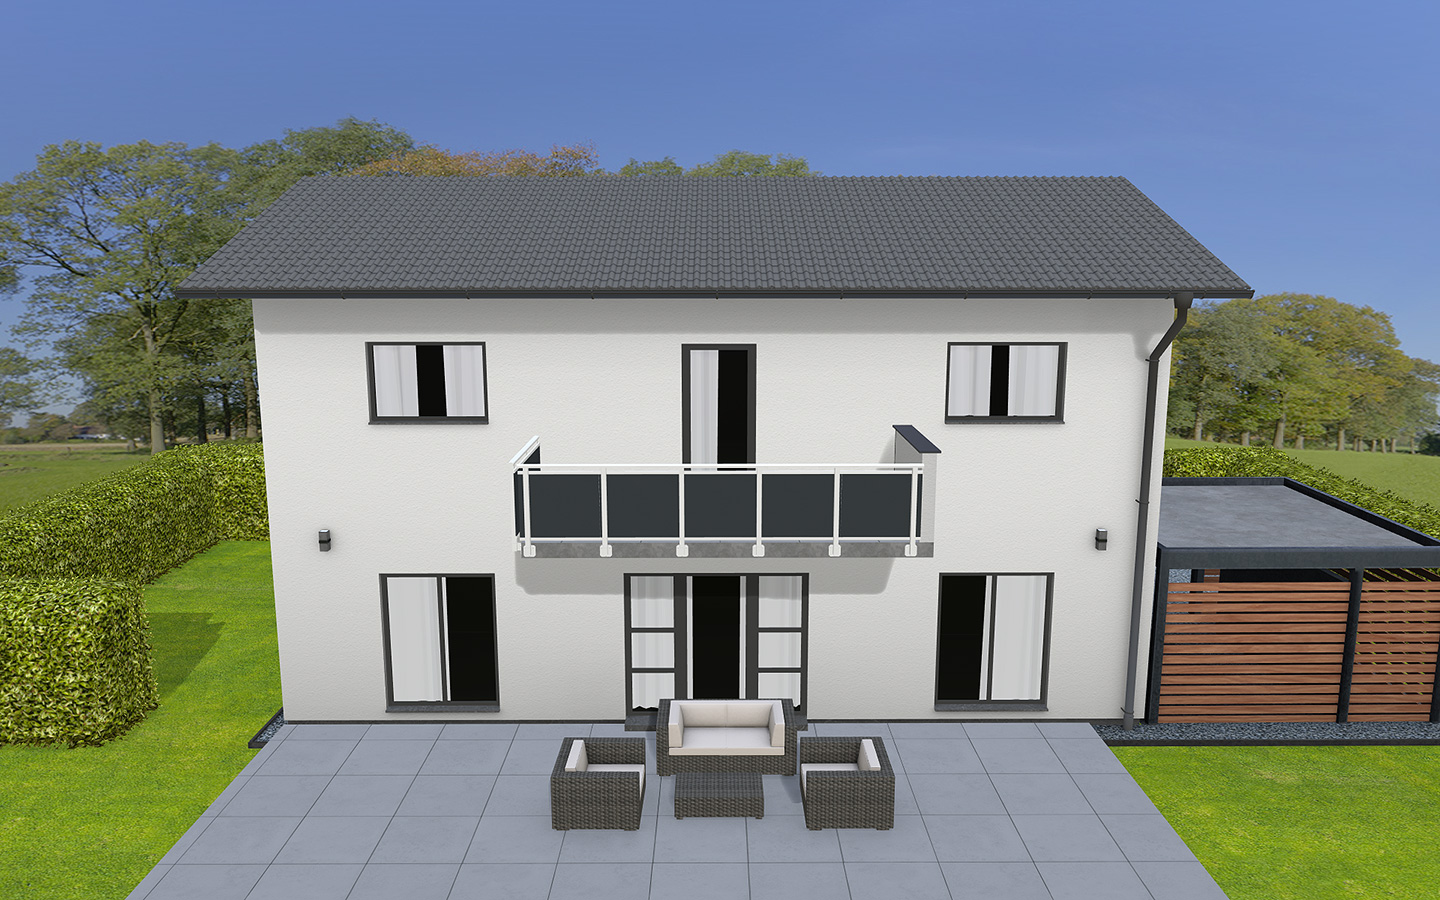 Sweet Home 3D là một phần mềm đồ họa được sử dụng để thiết kế và phác thảo ngôi nhà của bạn dưới dạng 3D. Nó giúp bạn hình dung ra toàn bộ bố trí và mối quan hệ giữa các phòng trong ngôi nhà của mình. Hãy tham khảo hình ảnh sản phẩm của chúng tôi để hiểu thêm về Sweet Home 3D.